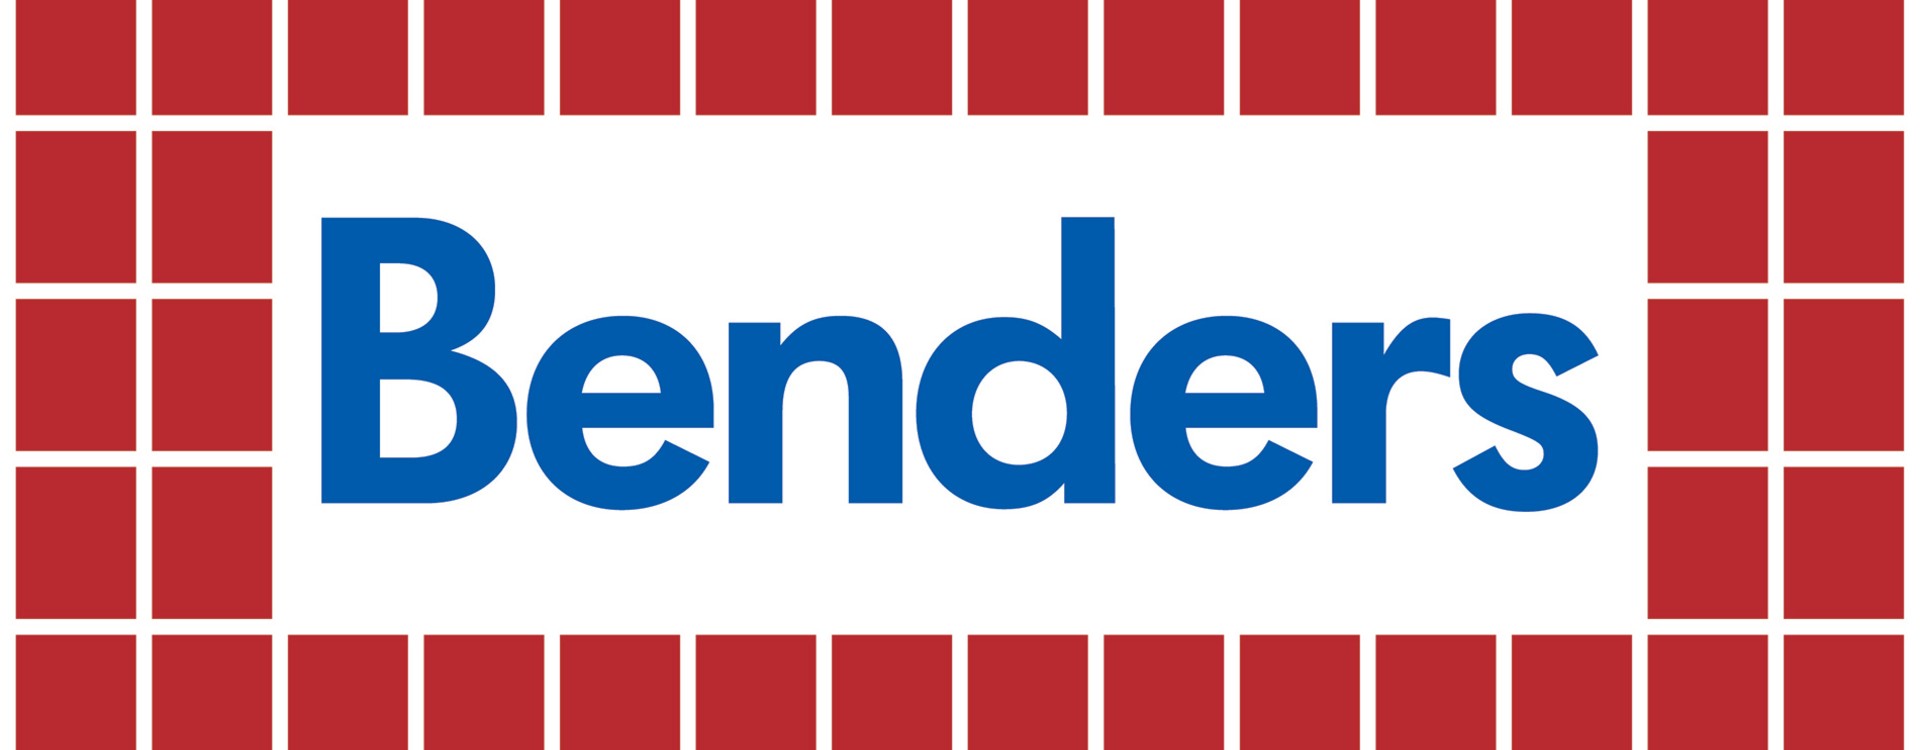 Benders - Distributør og samarbeirdspartner i Norge